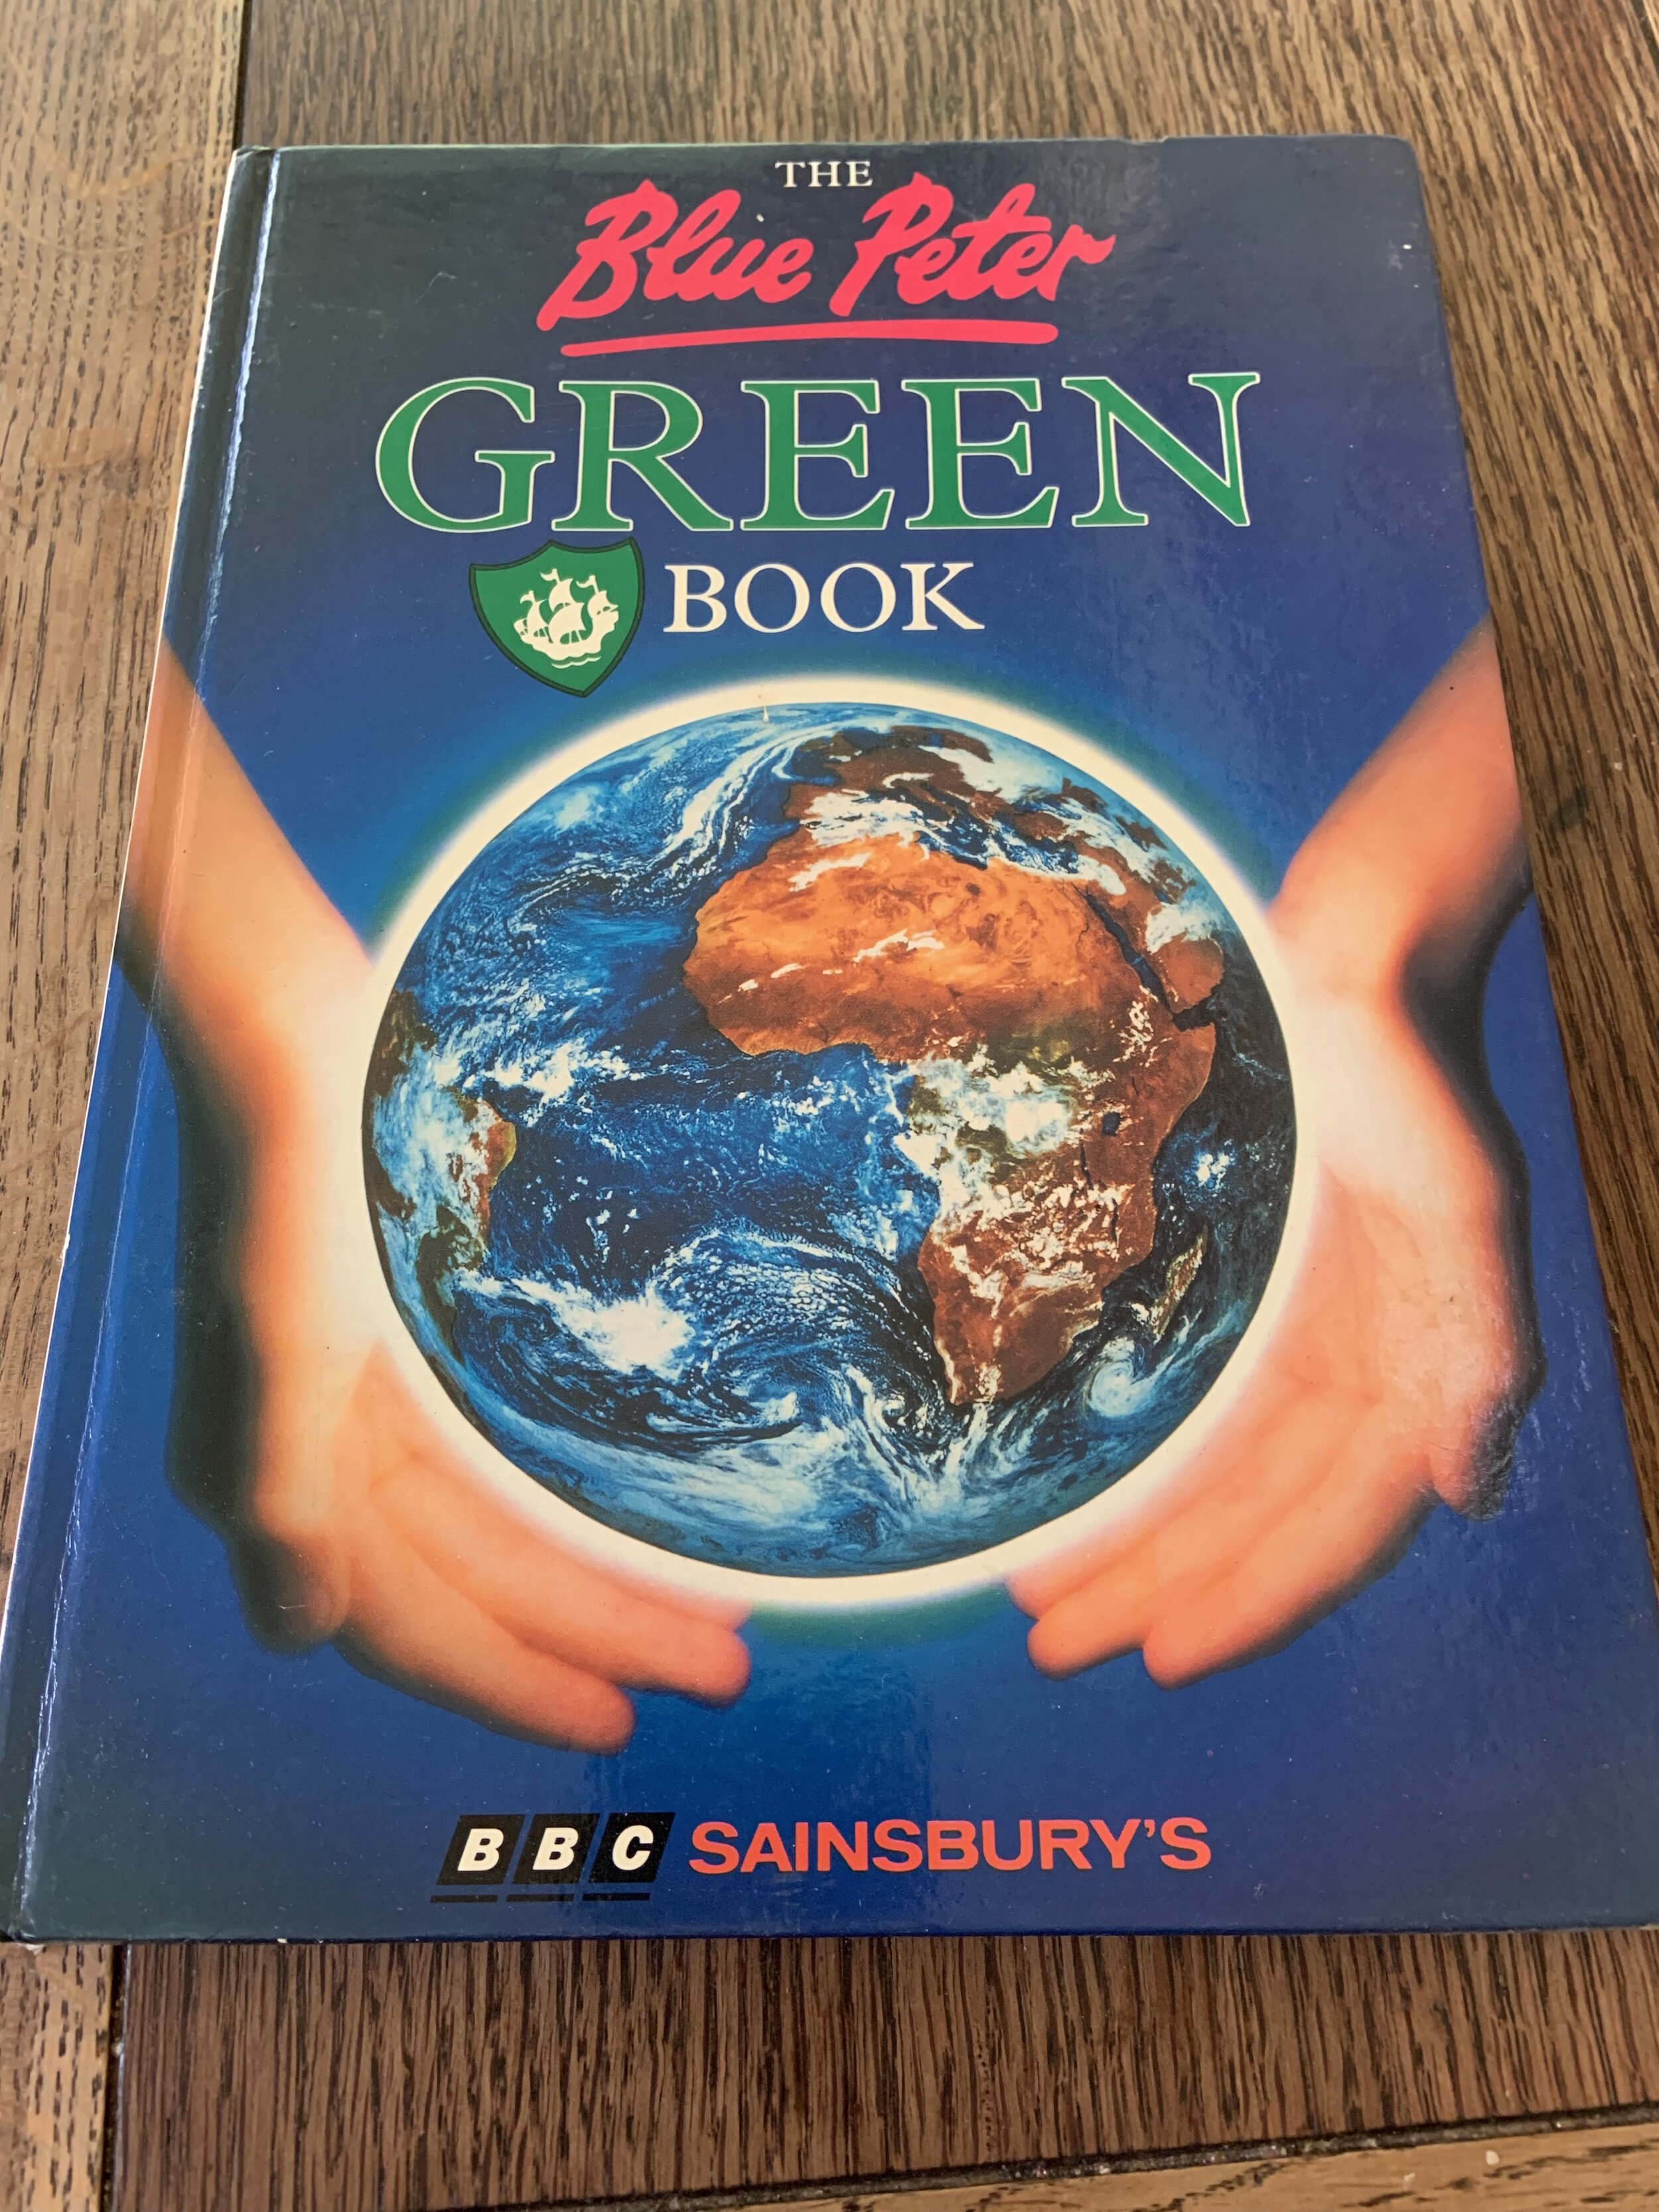 Green book.jpg